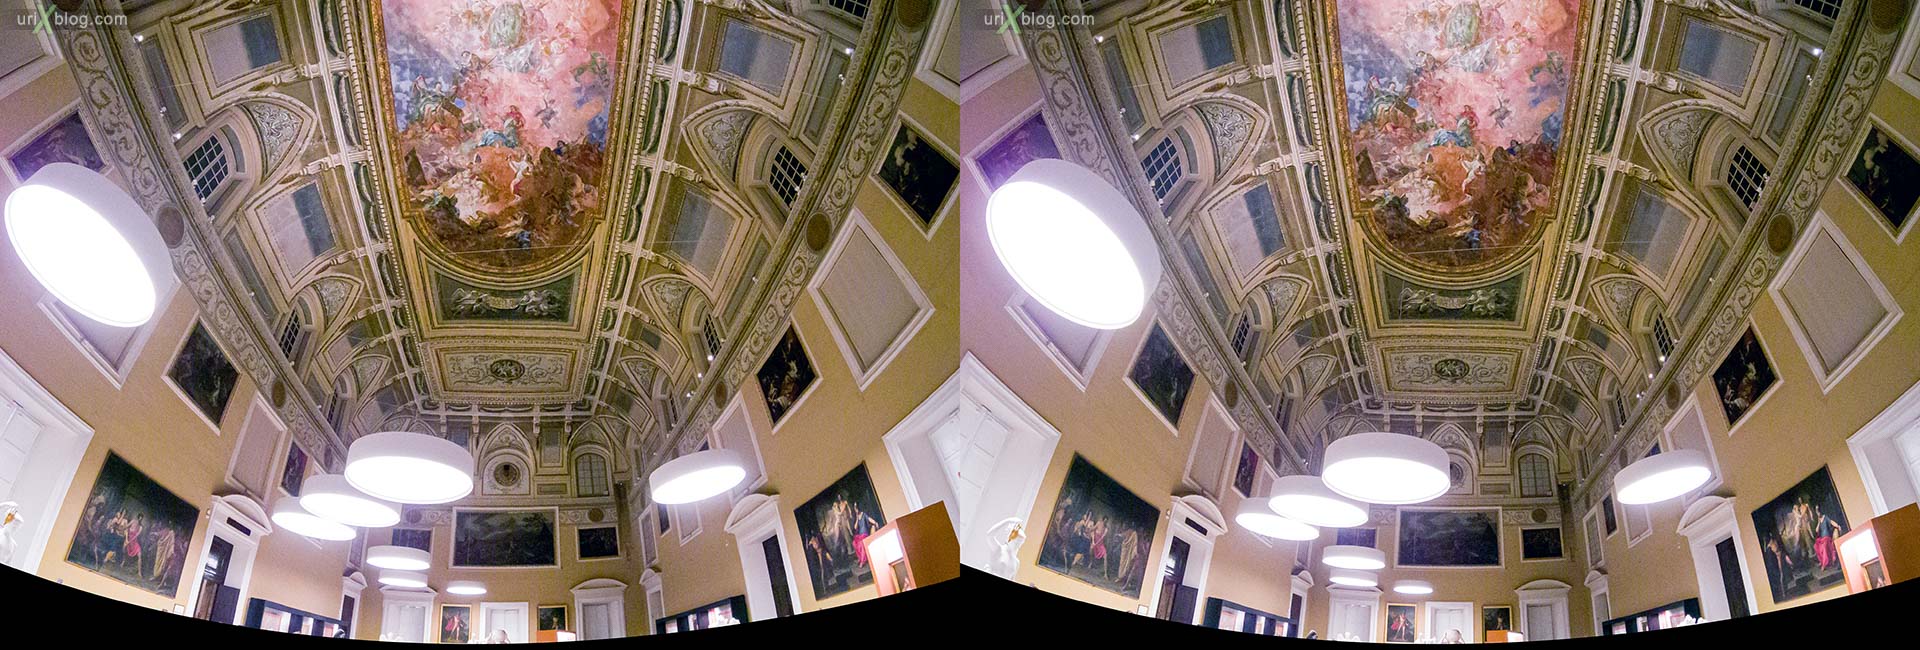 The Hall of the Sundial, зал с солнечными часами, потолок, лампы, роспись, Национальный археологический музей Неаполя, Древний Рим, Помпеи, выставка, Неаполь, Италия, 3D, перекрёстная стереопара, стерео, стереопара